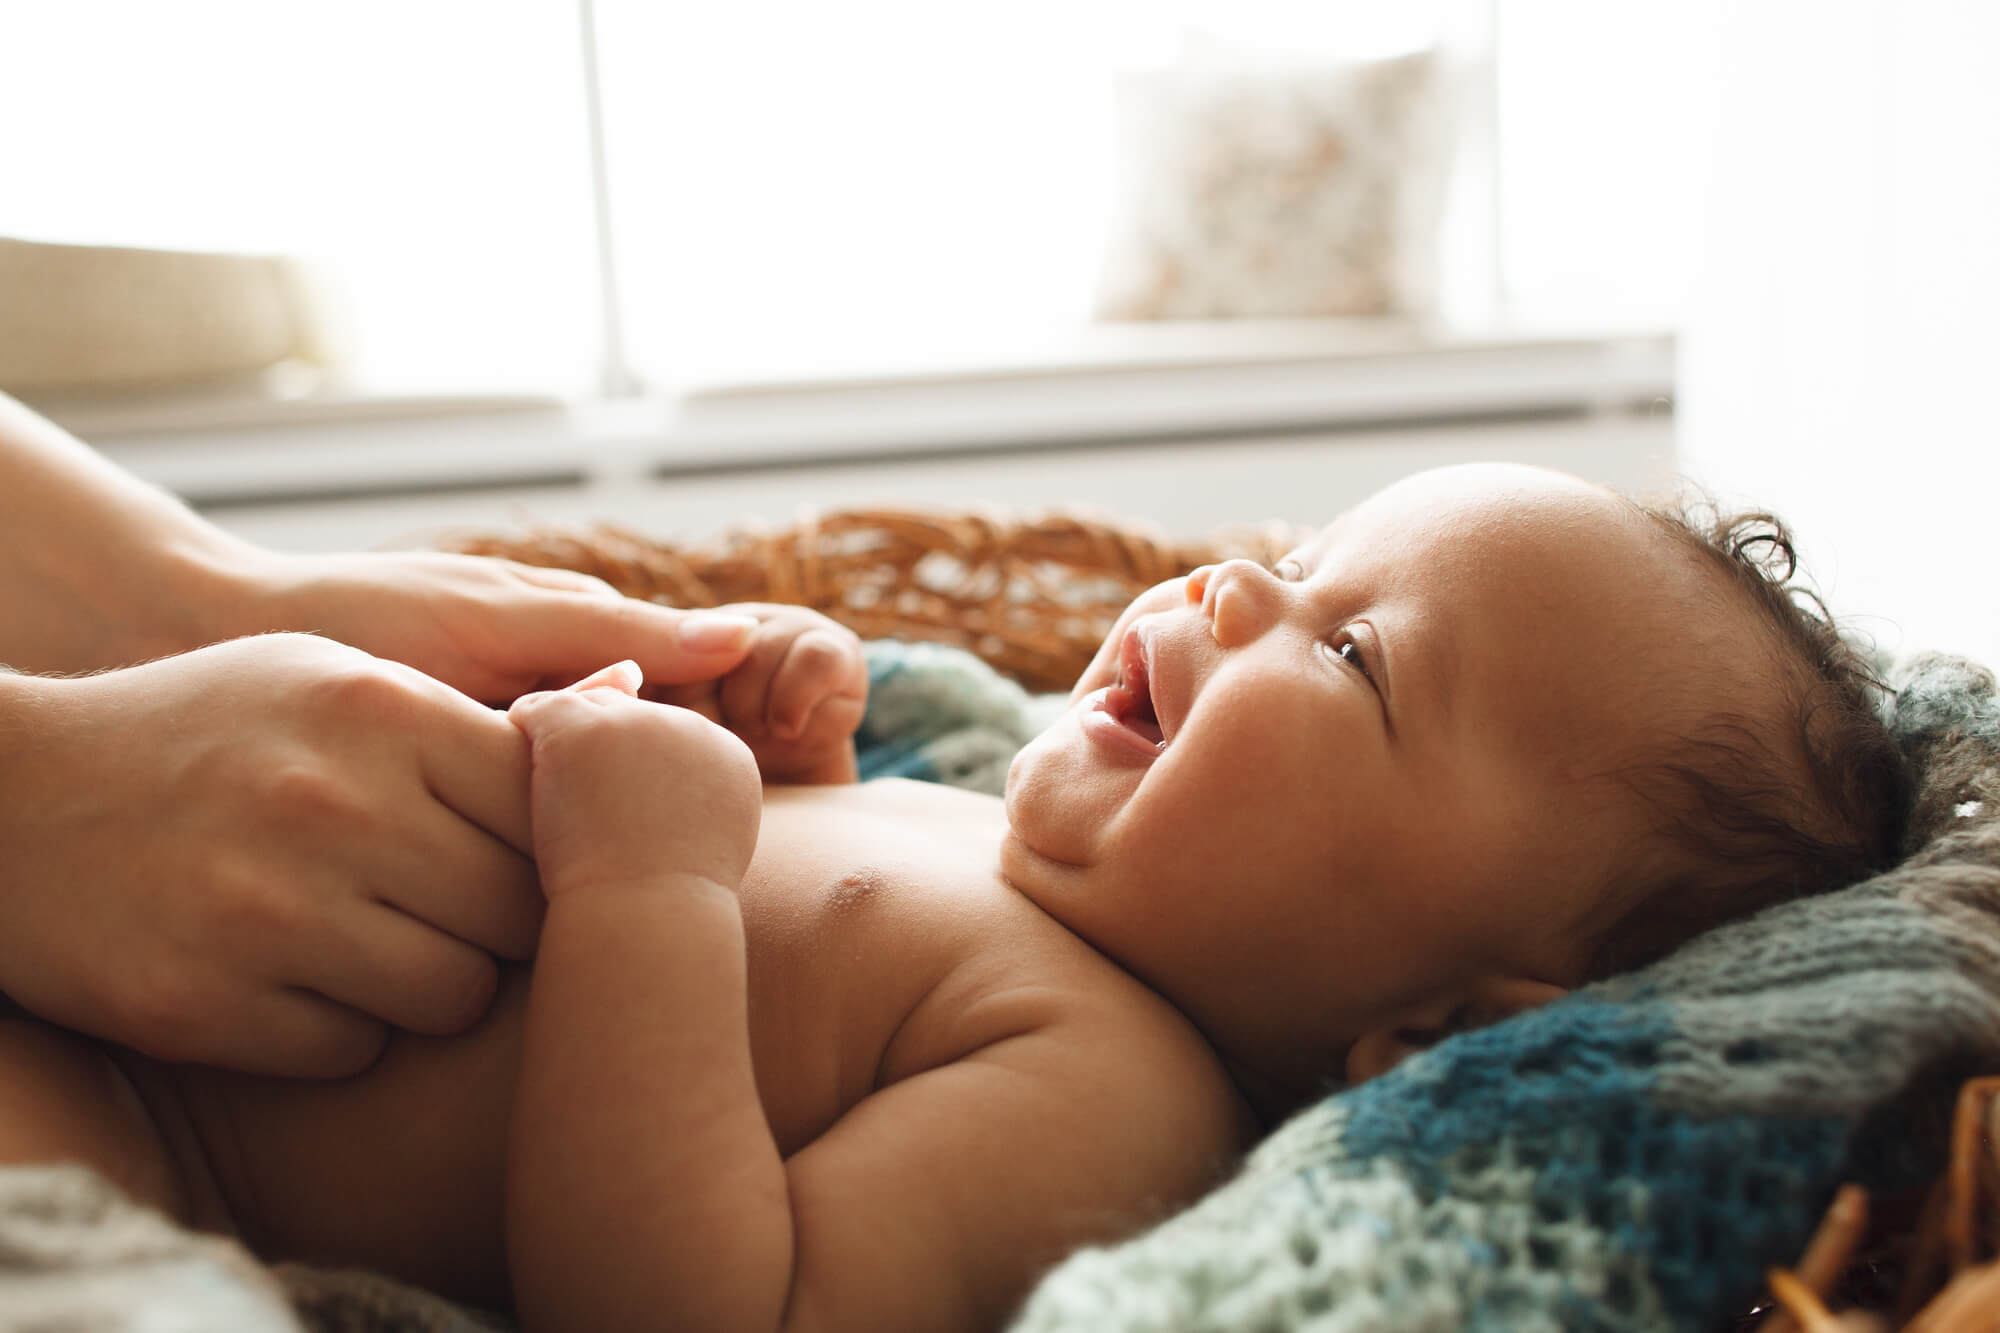 202223 primeiros dias do bebe quais cuidados mais importantes a se tomar - Primeiros dias do bebê: quais cuidados mais importantes a se tomar?